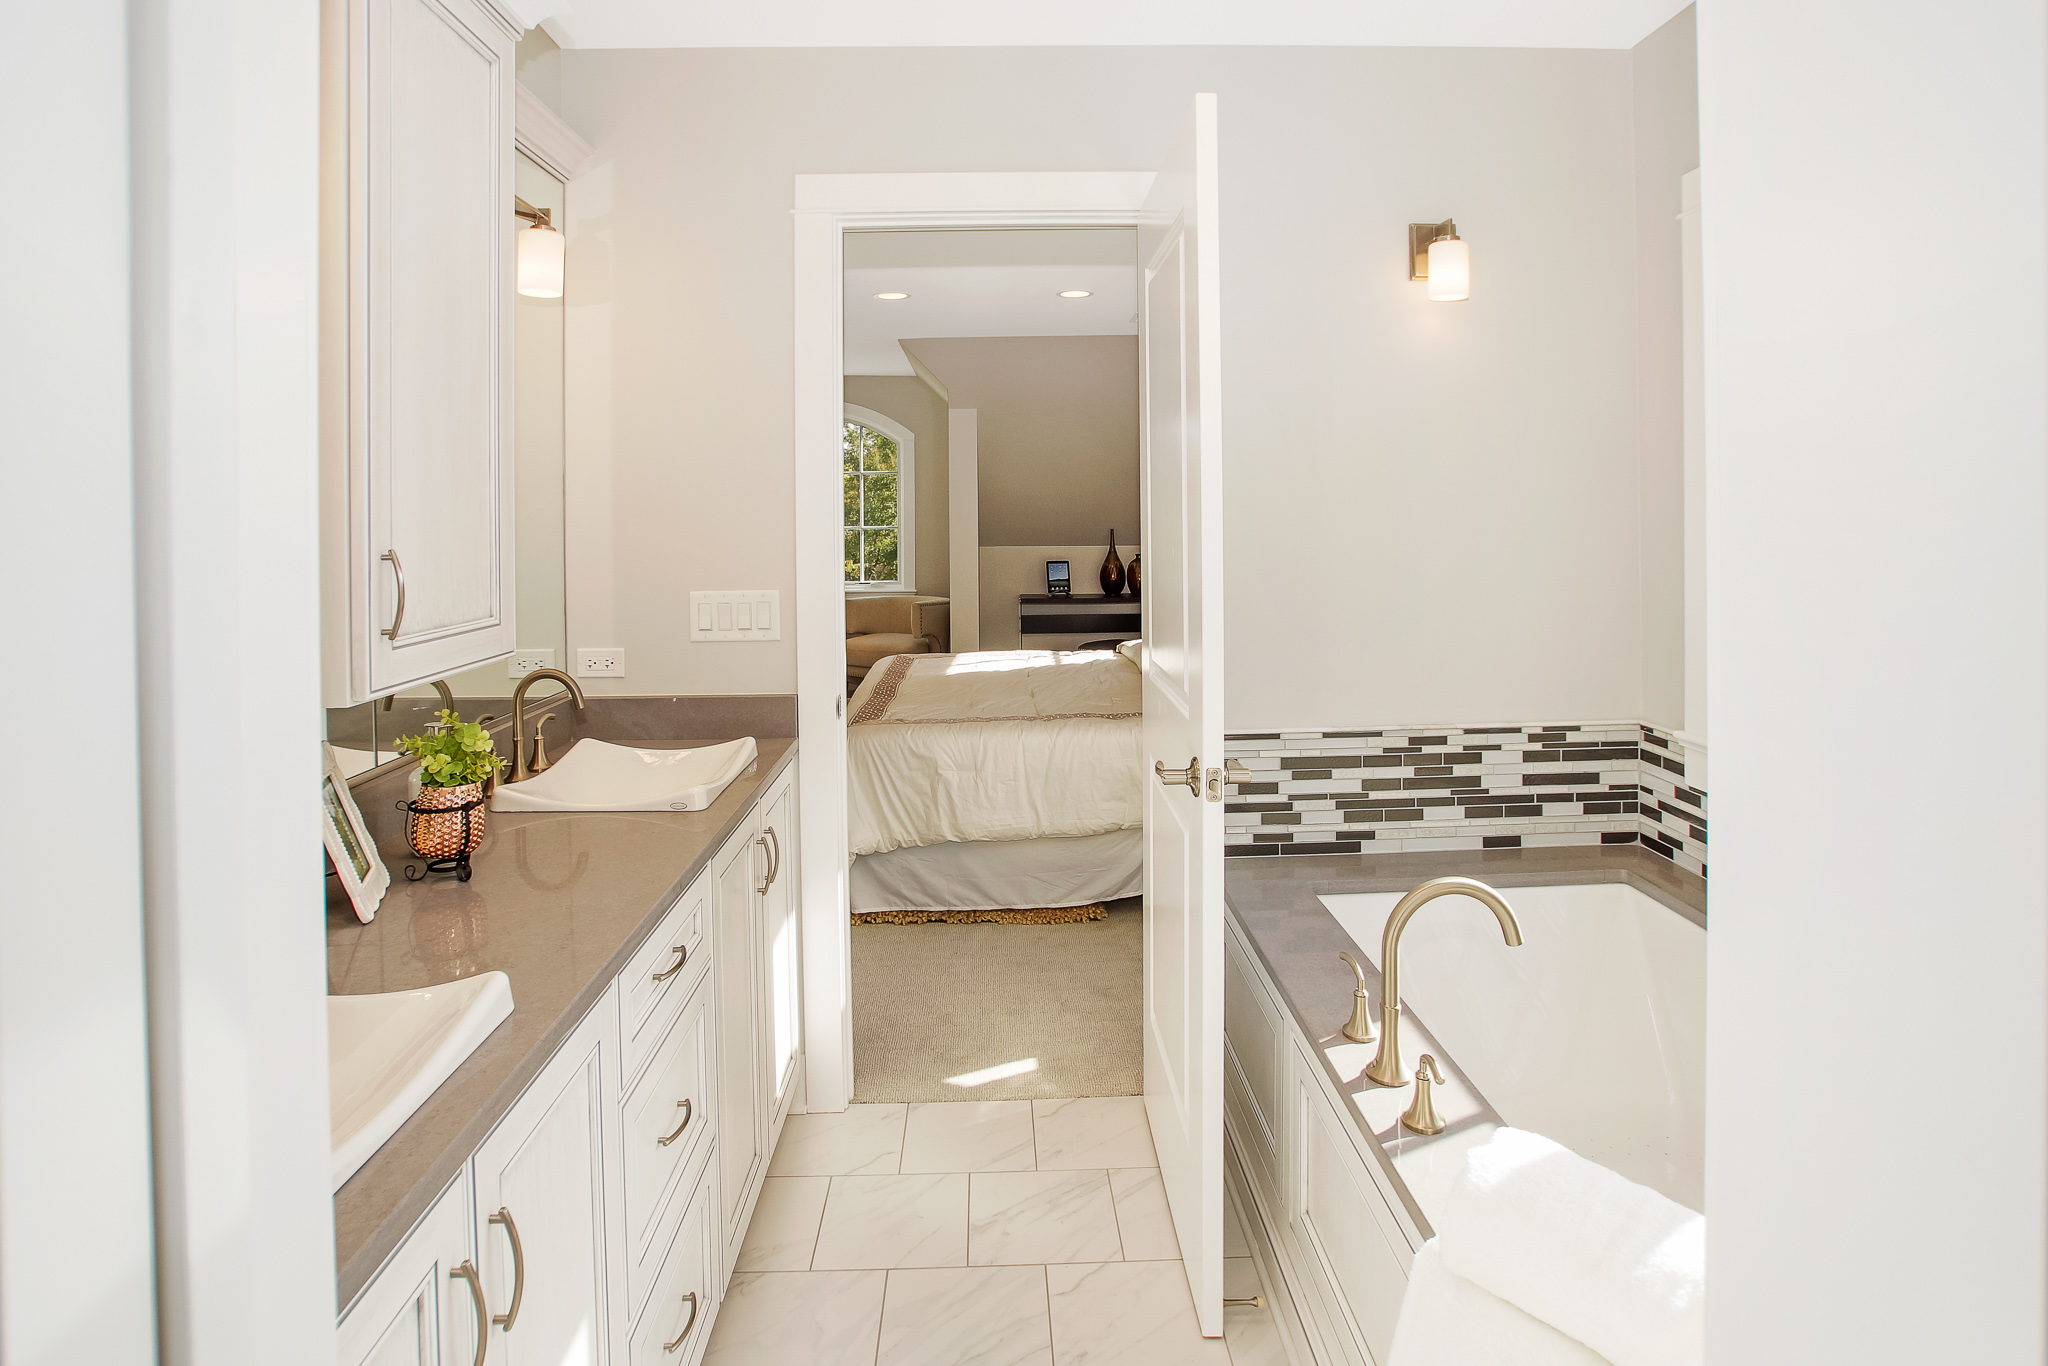 luxury interior design for bathrooms